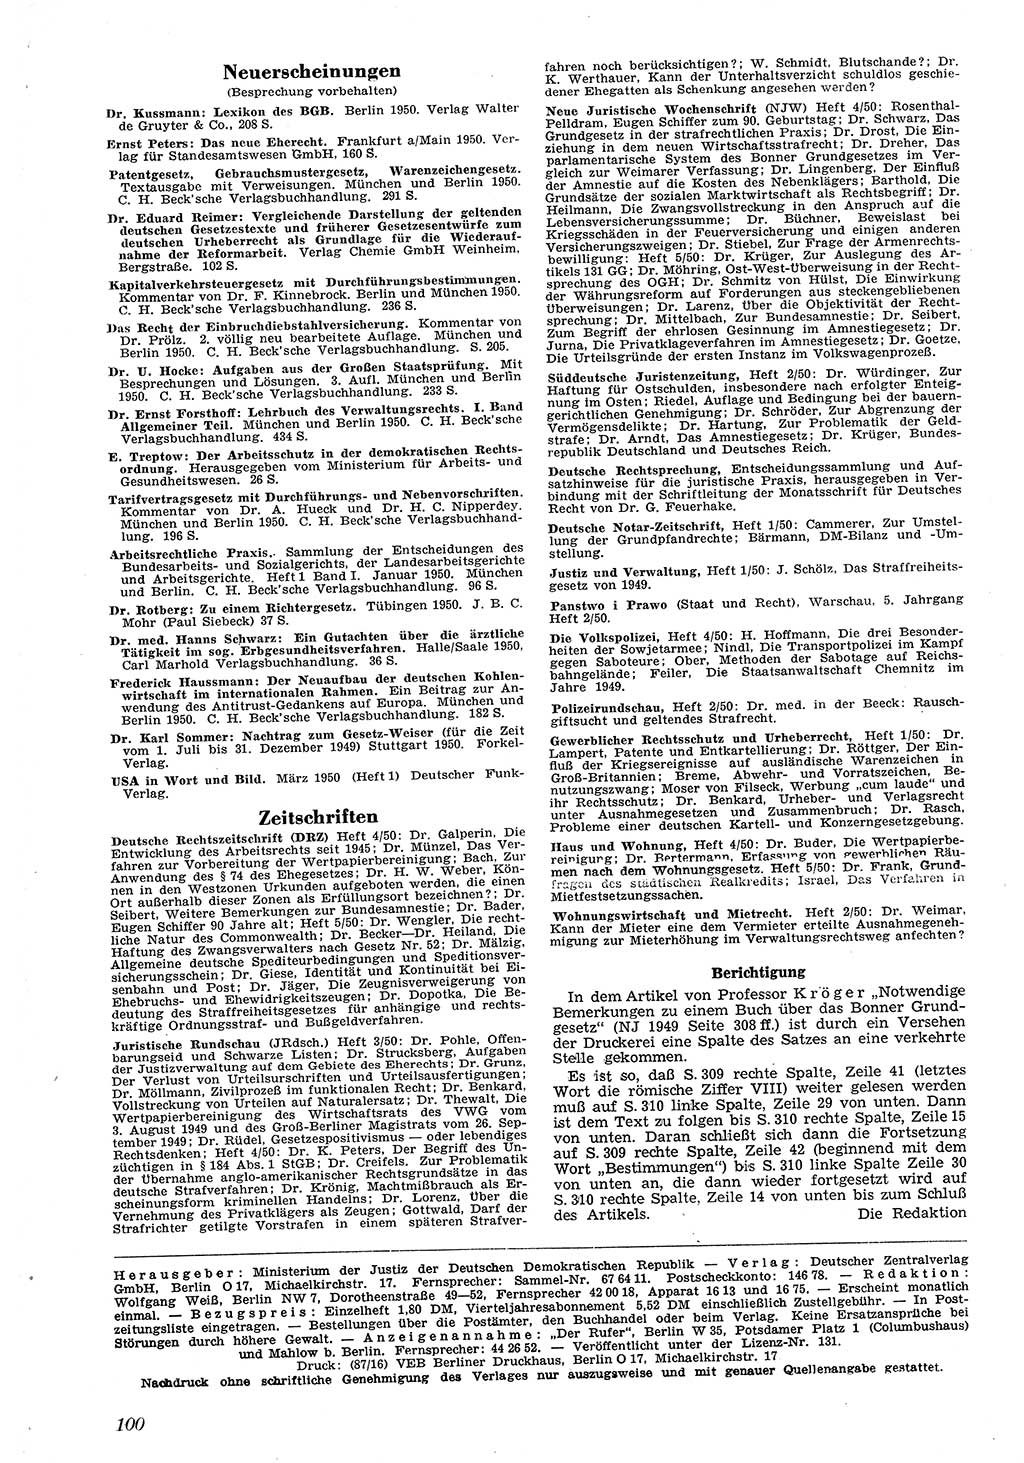 Neue Justiz (NJ), Zeitschrift für Recht und Rechtswissenschaft [Deutsche Demokratische Republik (DDR)], 4. Jahrgang 1950, Seite 100 (NJ DDR 1950, S. 100)